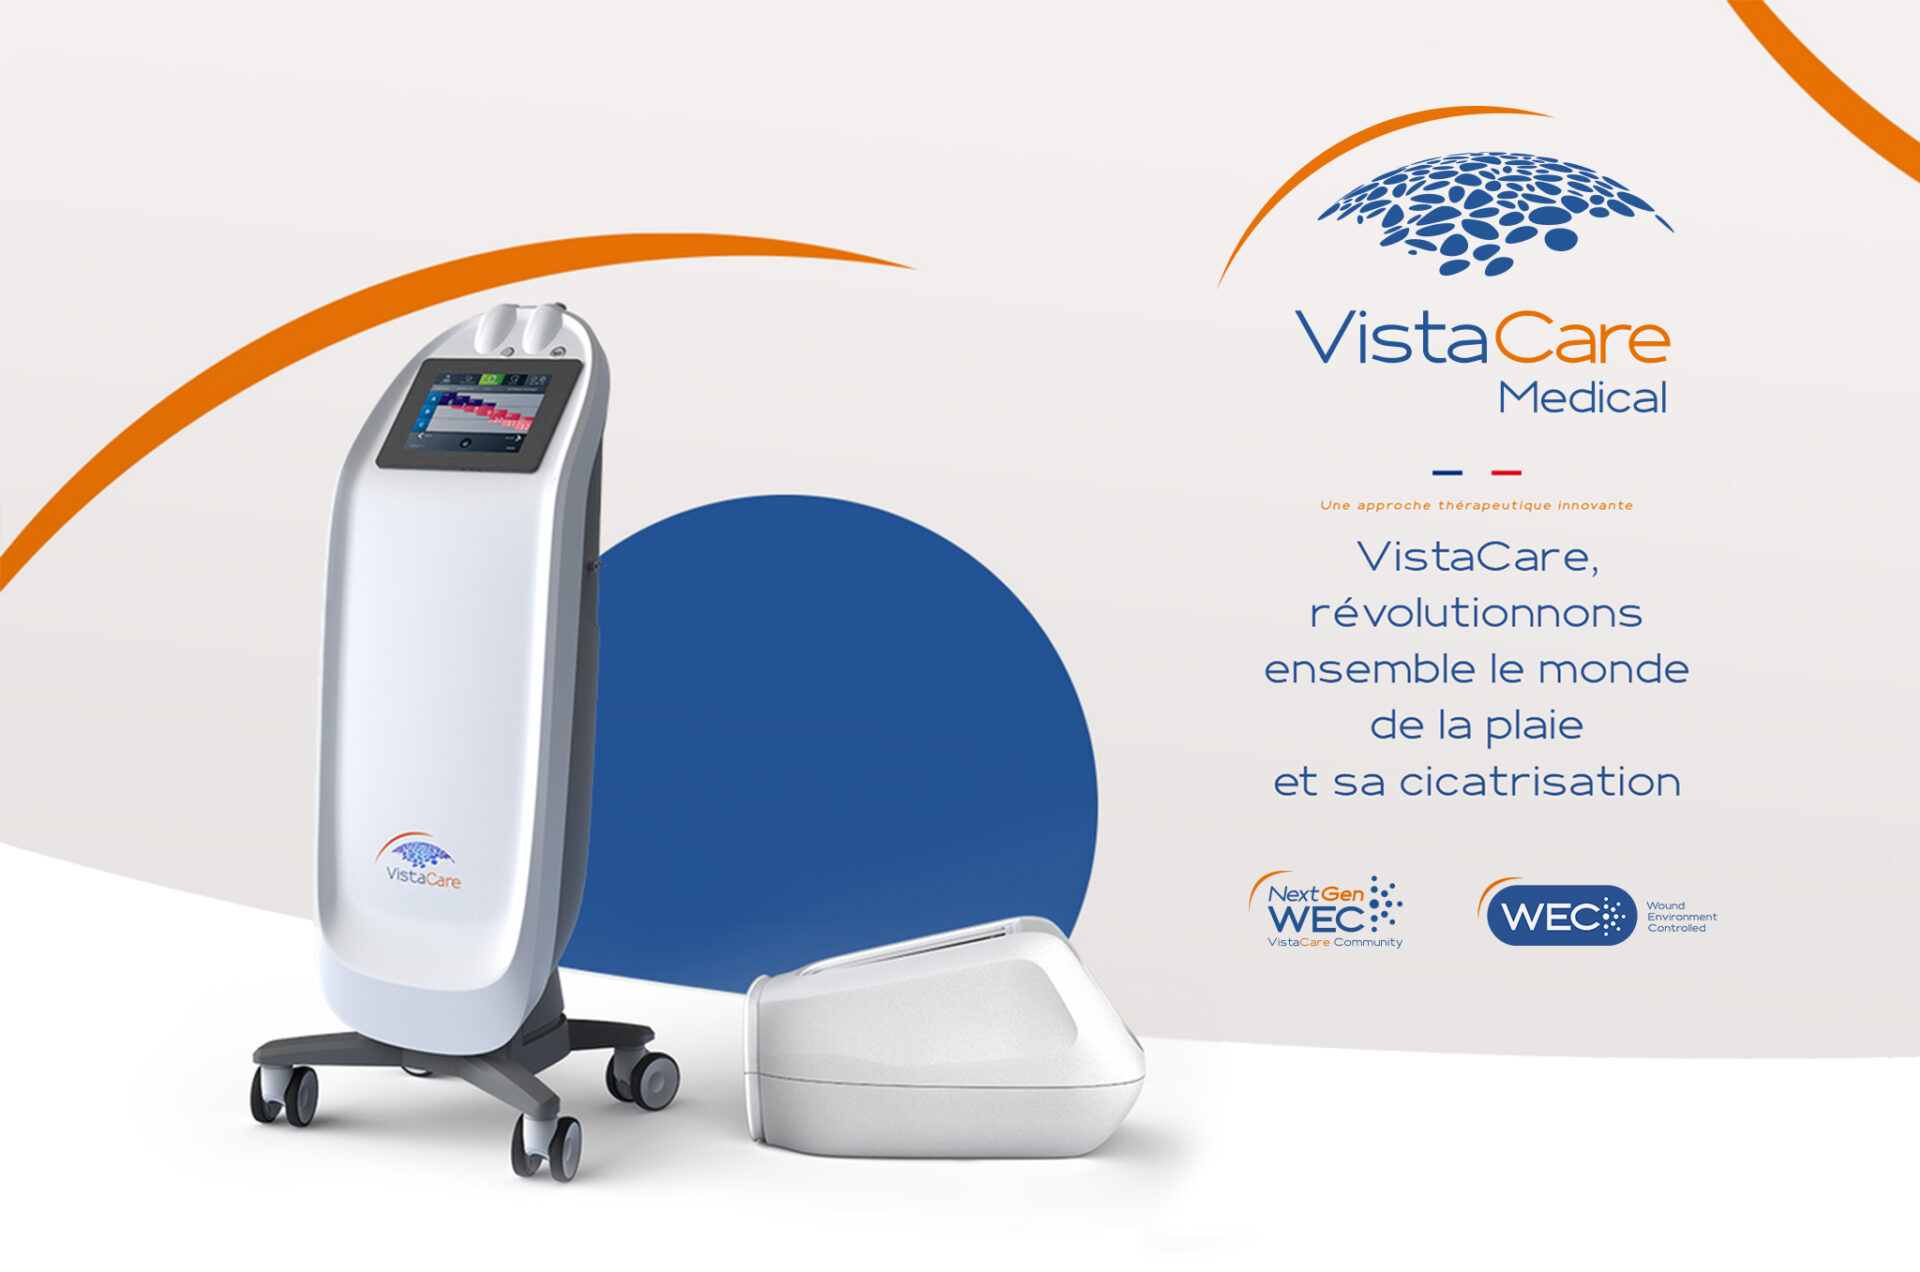 VistaCare Medical